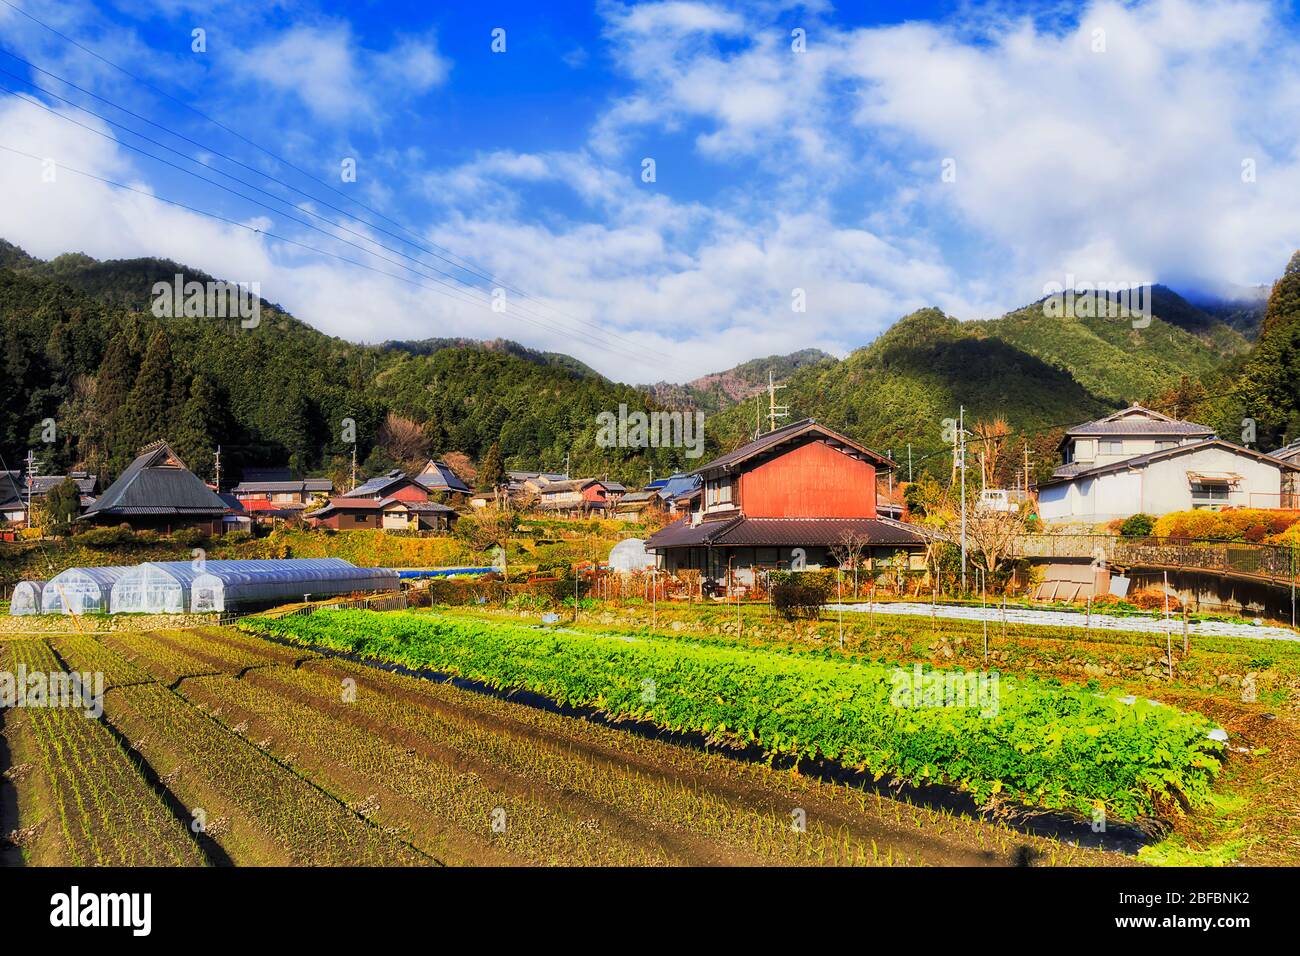 Gemüse, das auf einer abgelegenen landwirtschaftlichen Farm in einem kleinen Dorf in Ohara in der Nähe von Kyoto, Japan, angebaut wird. Stockfoto